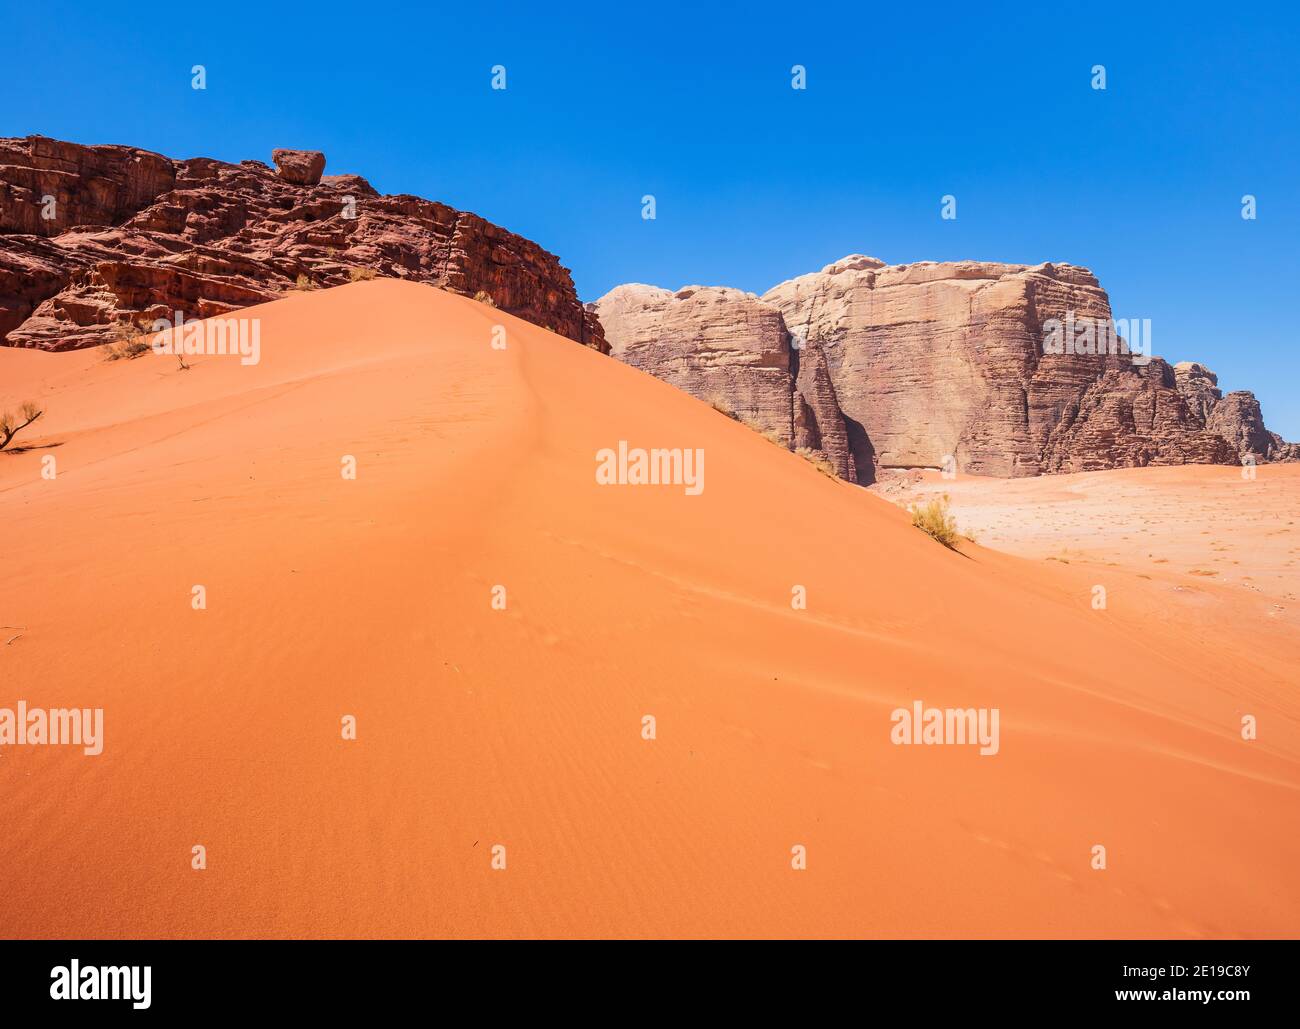 Sand dunes in Wadi Rum Desert, Jordan. The red desert. Stock Photo